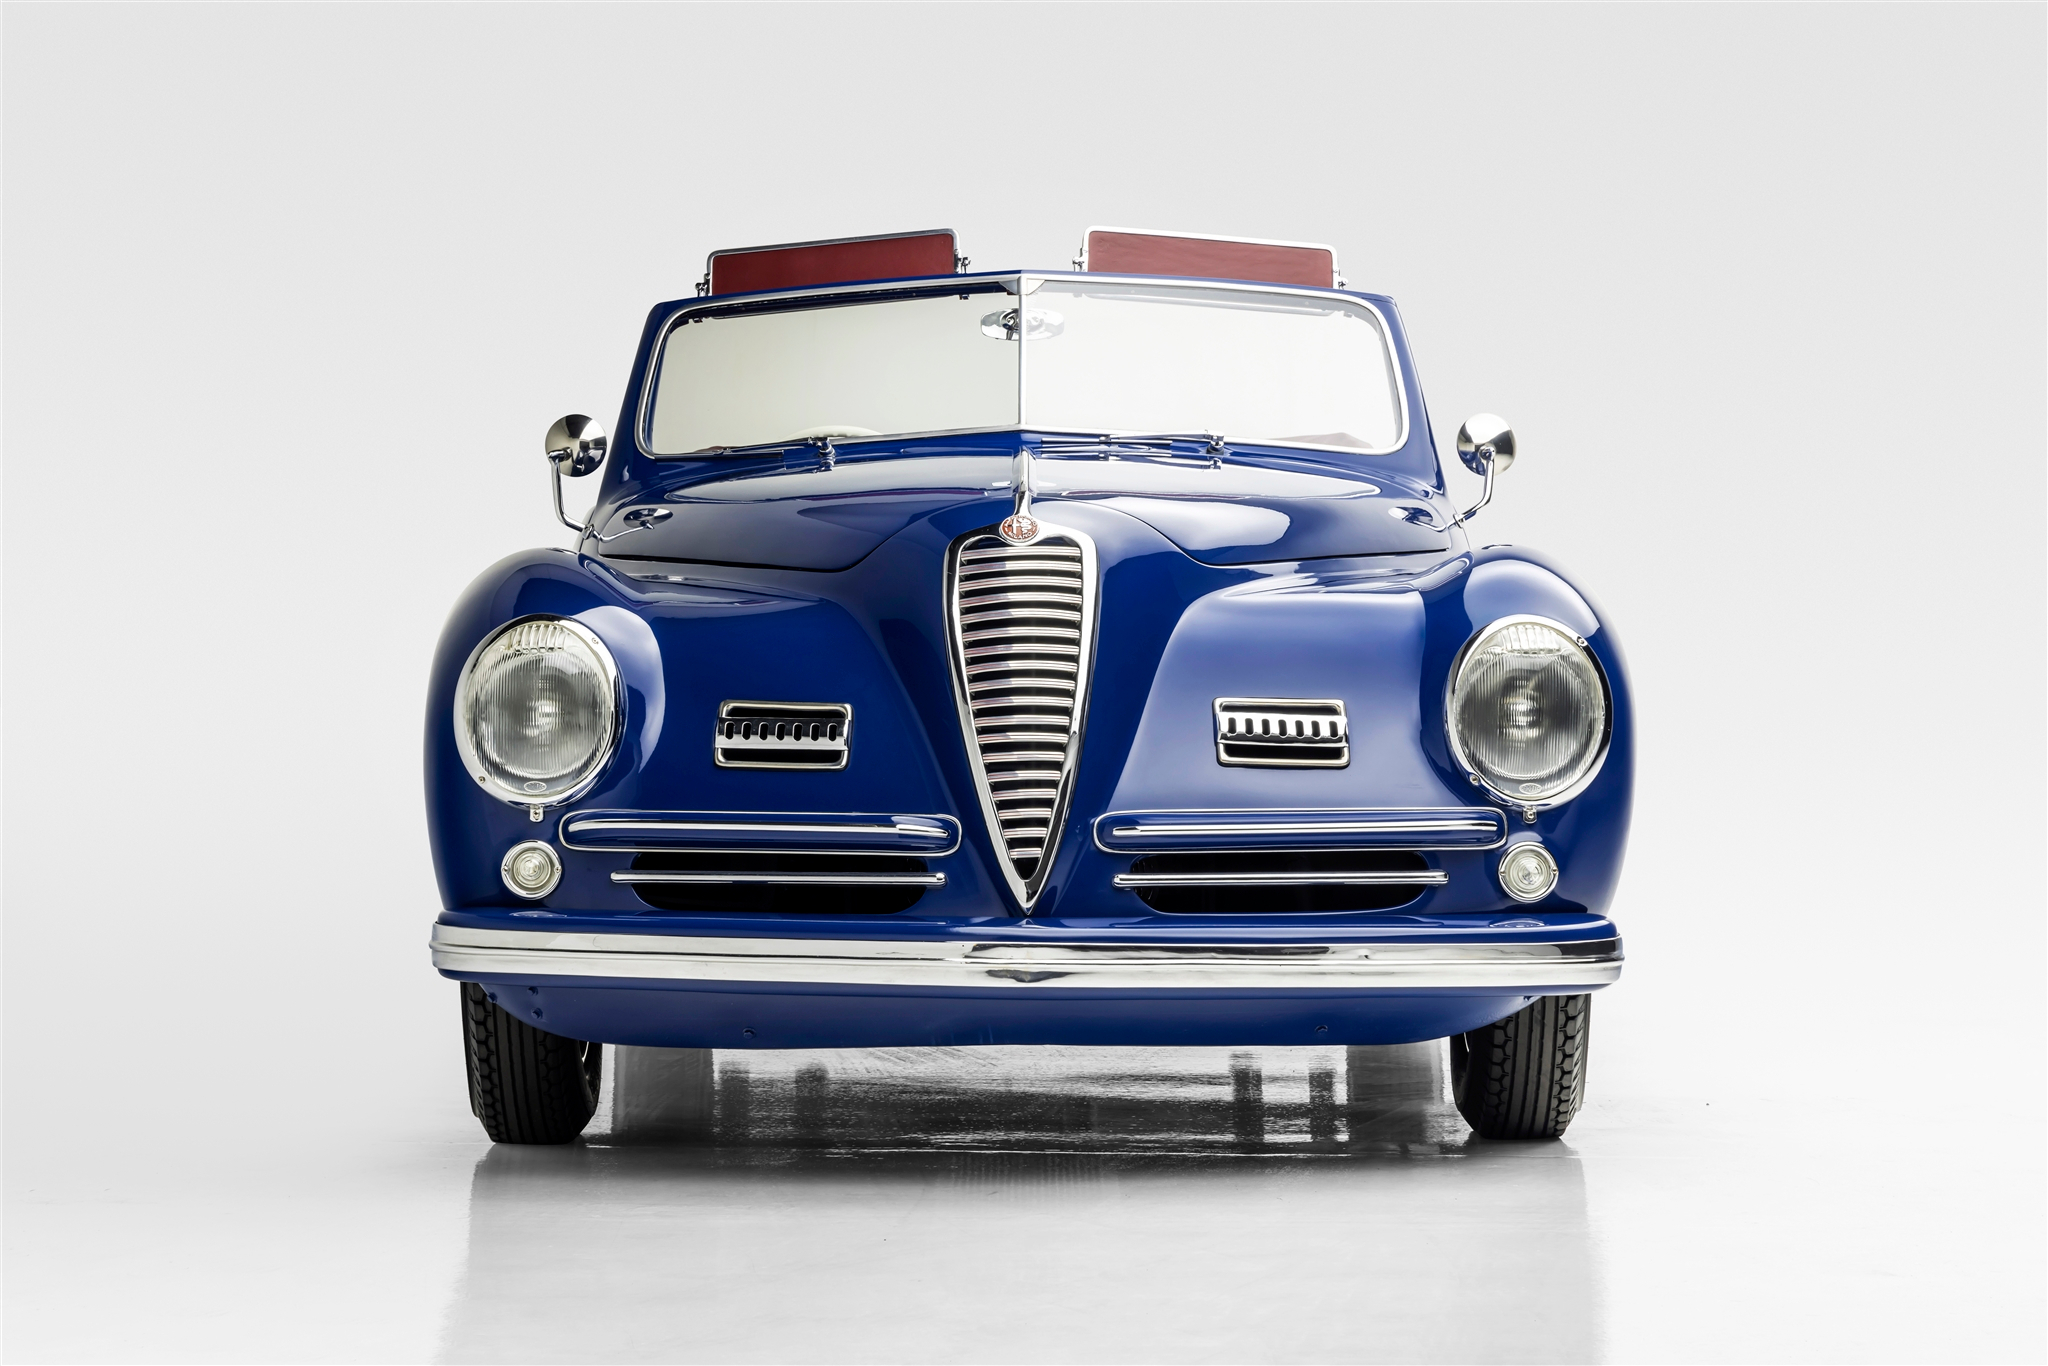 1946 Alfa Romeo 6C 2500 Sport Cabriolet by Pinin Farina